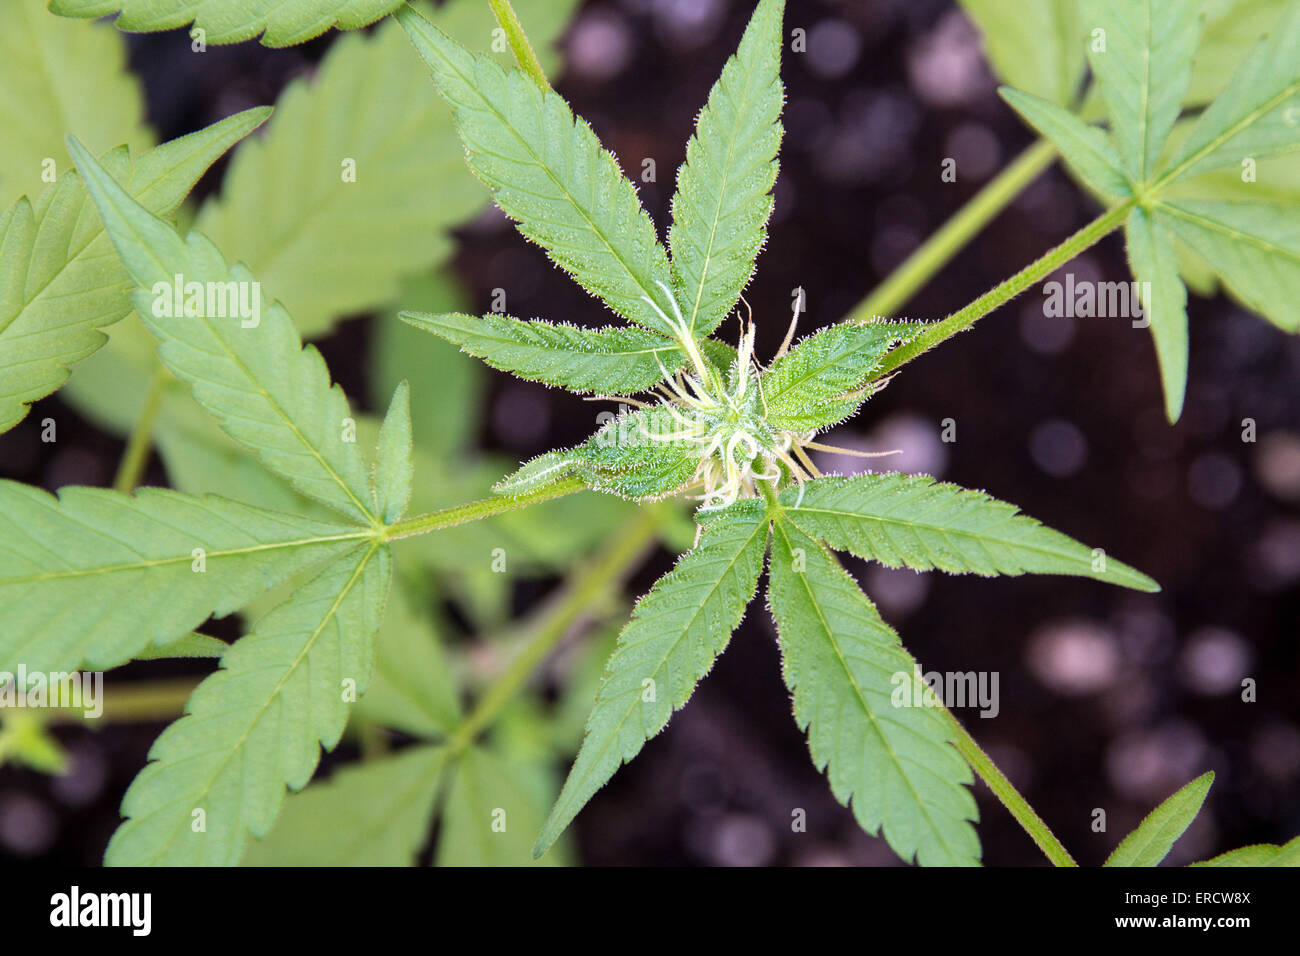 Medical marijuana plante appelée aussi le cannabis bud closeup Banque D'Images